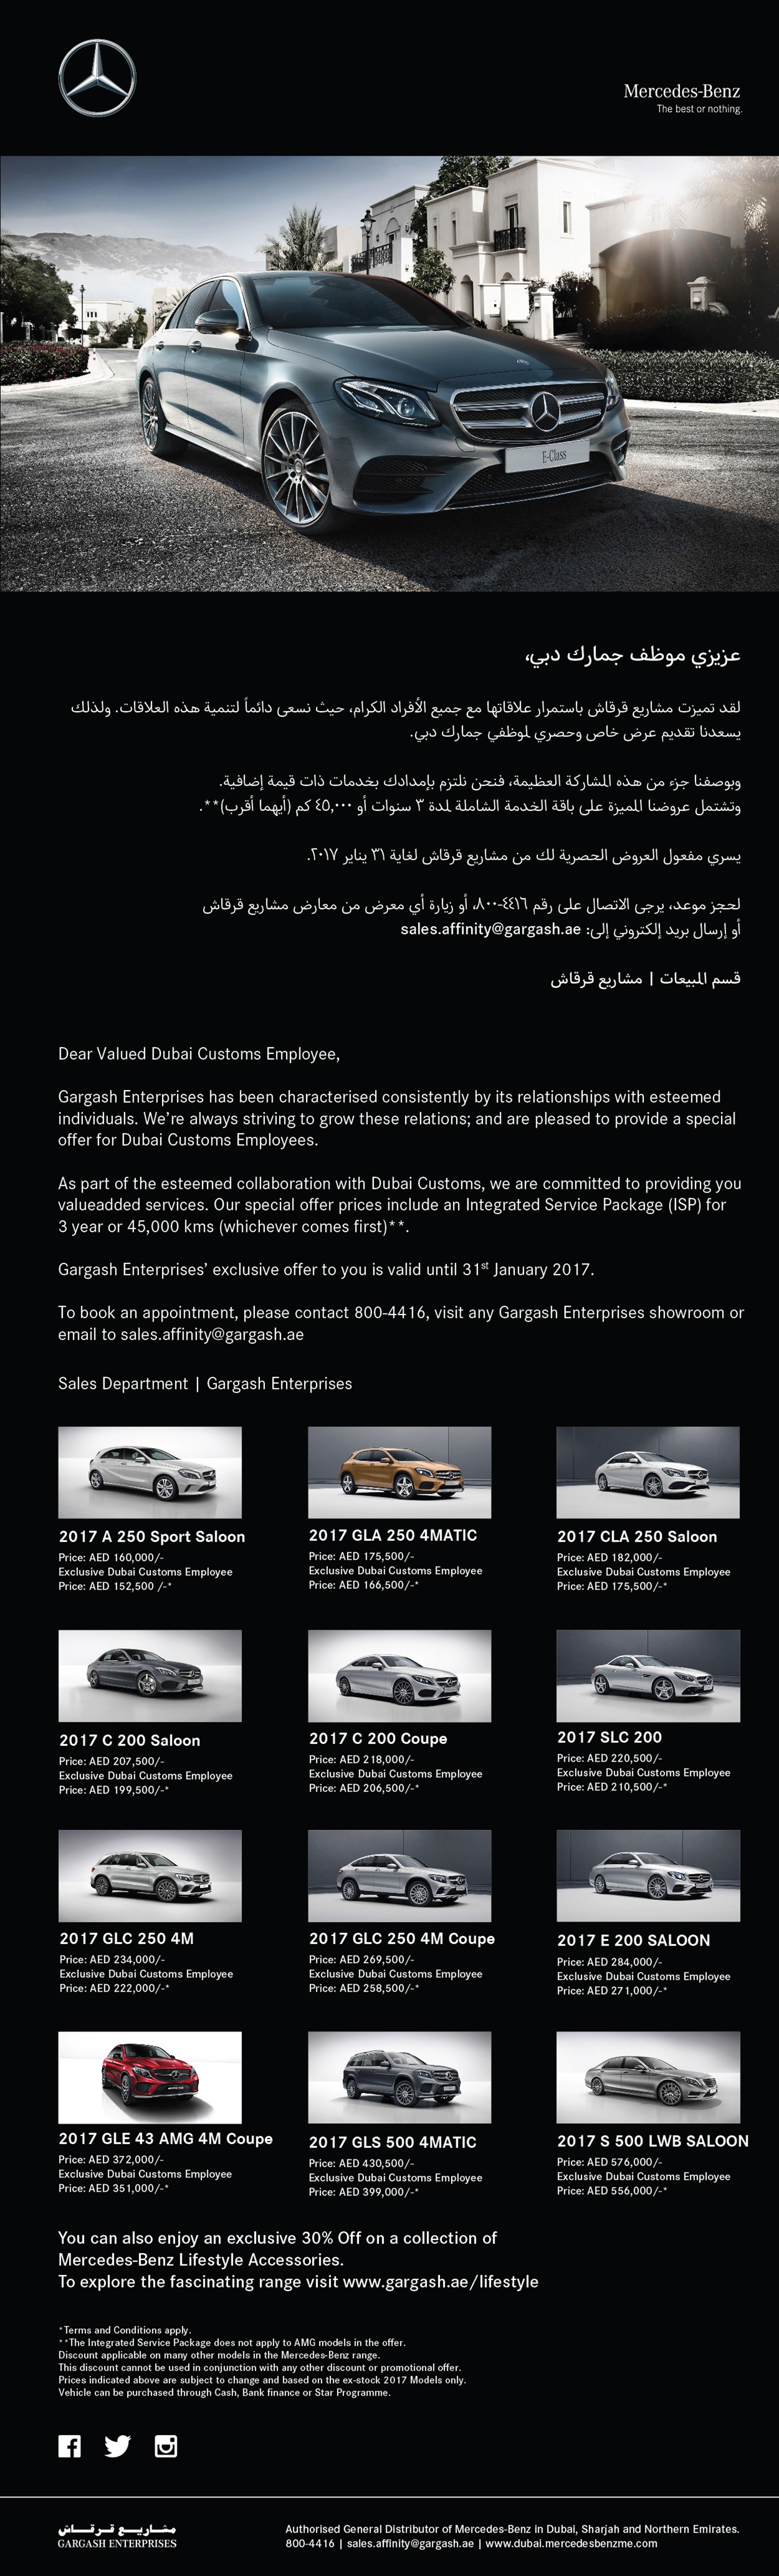 mercedes-benz Benz car retouch dubai Emailer UAE car Emailer Design